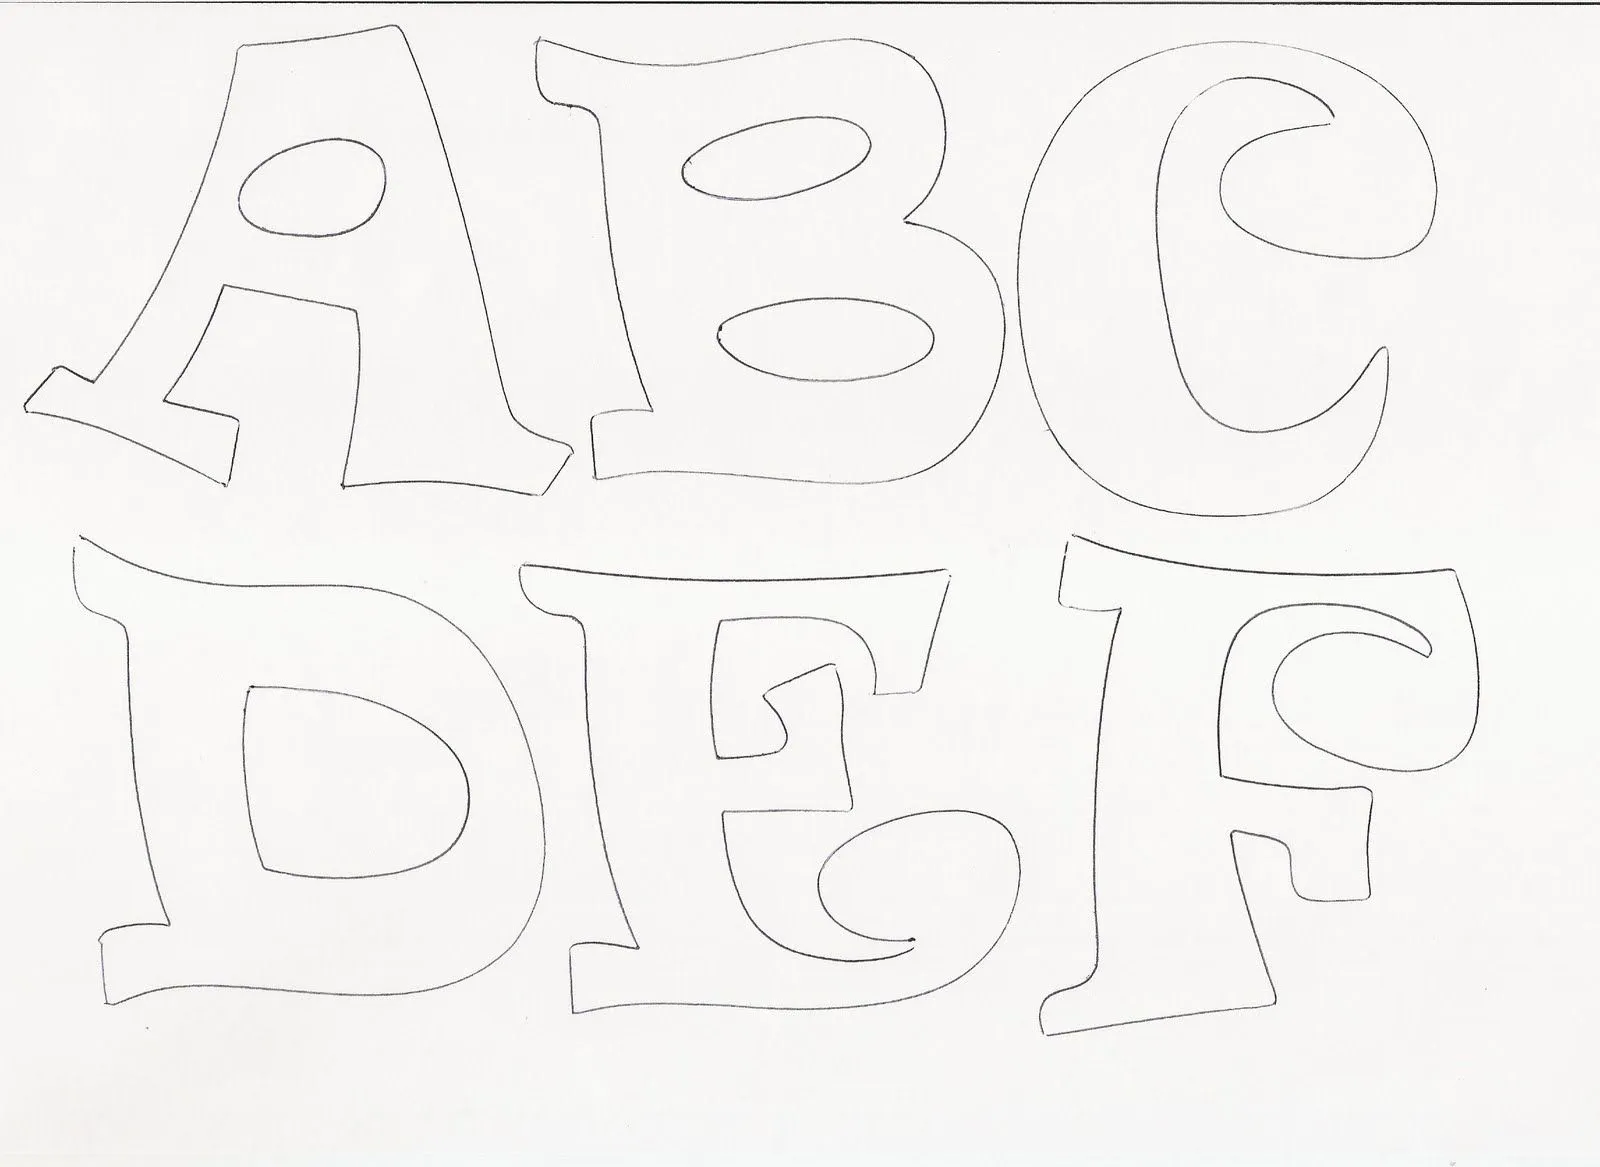 Moldes para hacer letras en goma eva - Imagui | letras ...